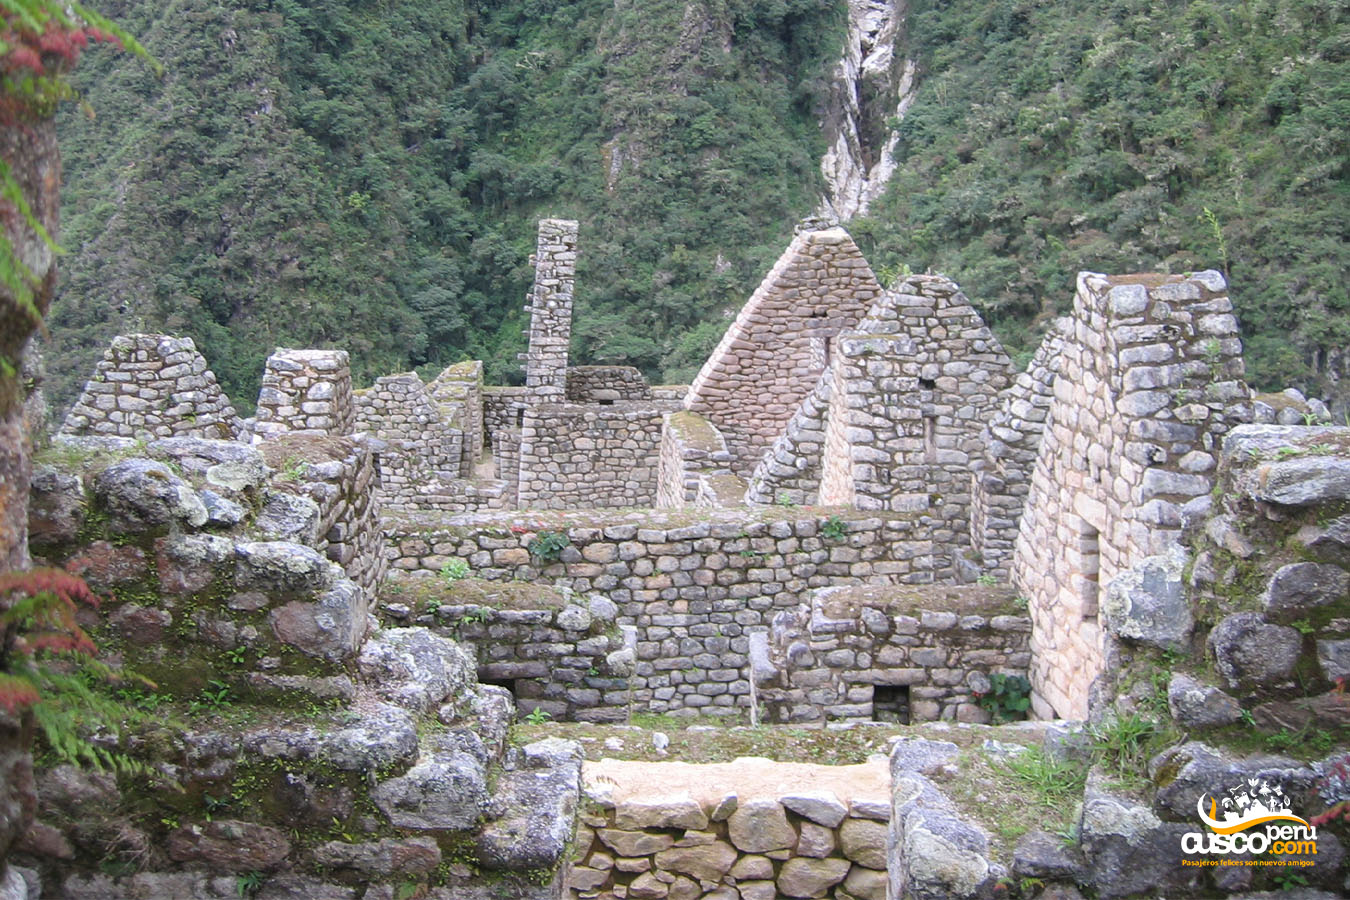 Wiñayhuayna, Caminho Inca. Fonte: CuscoPeru.com